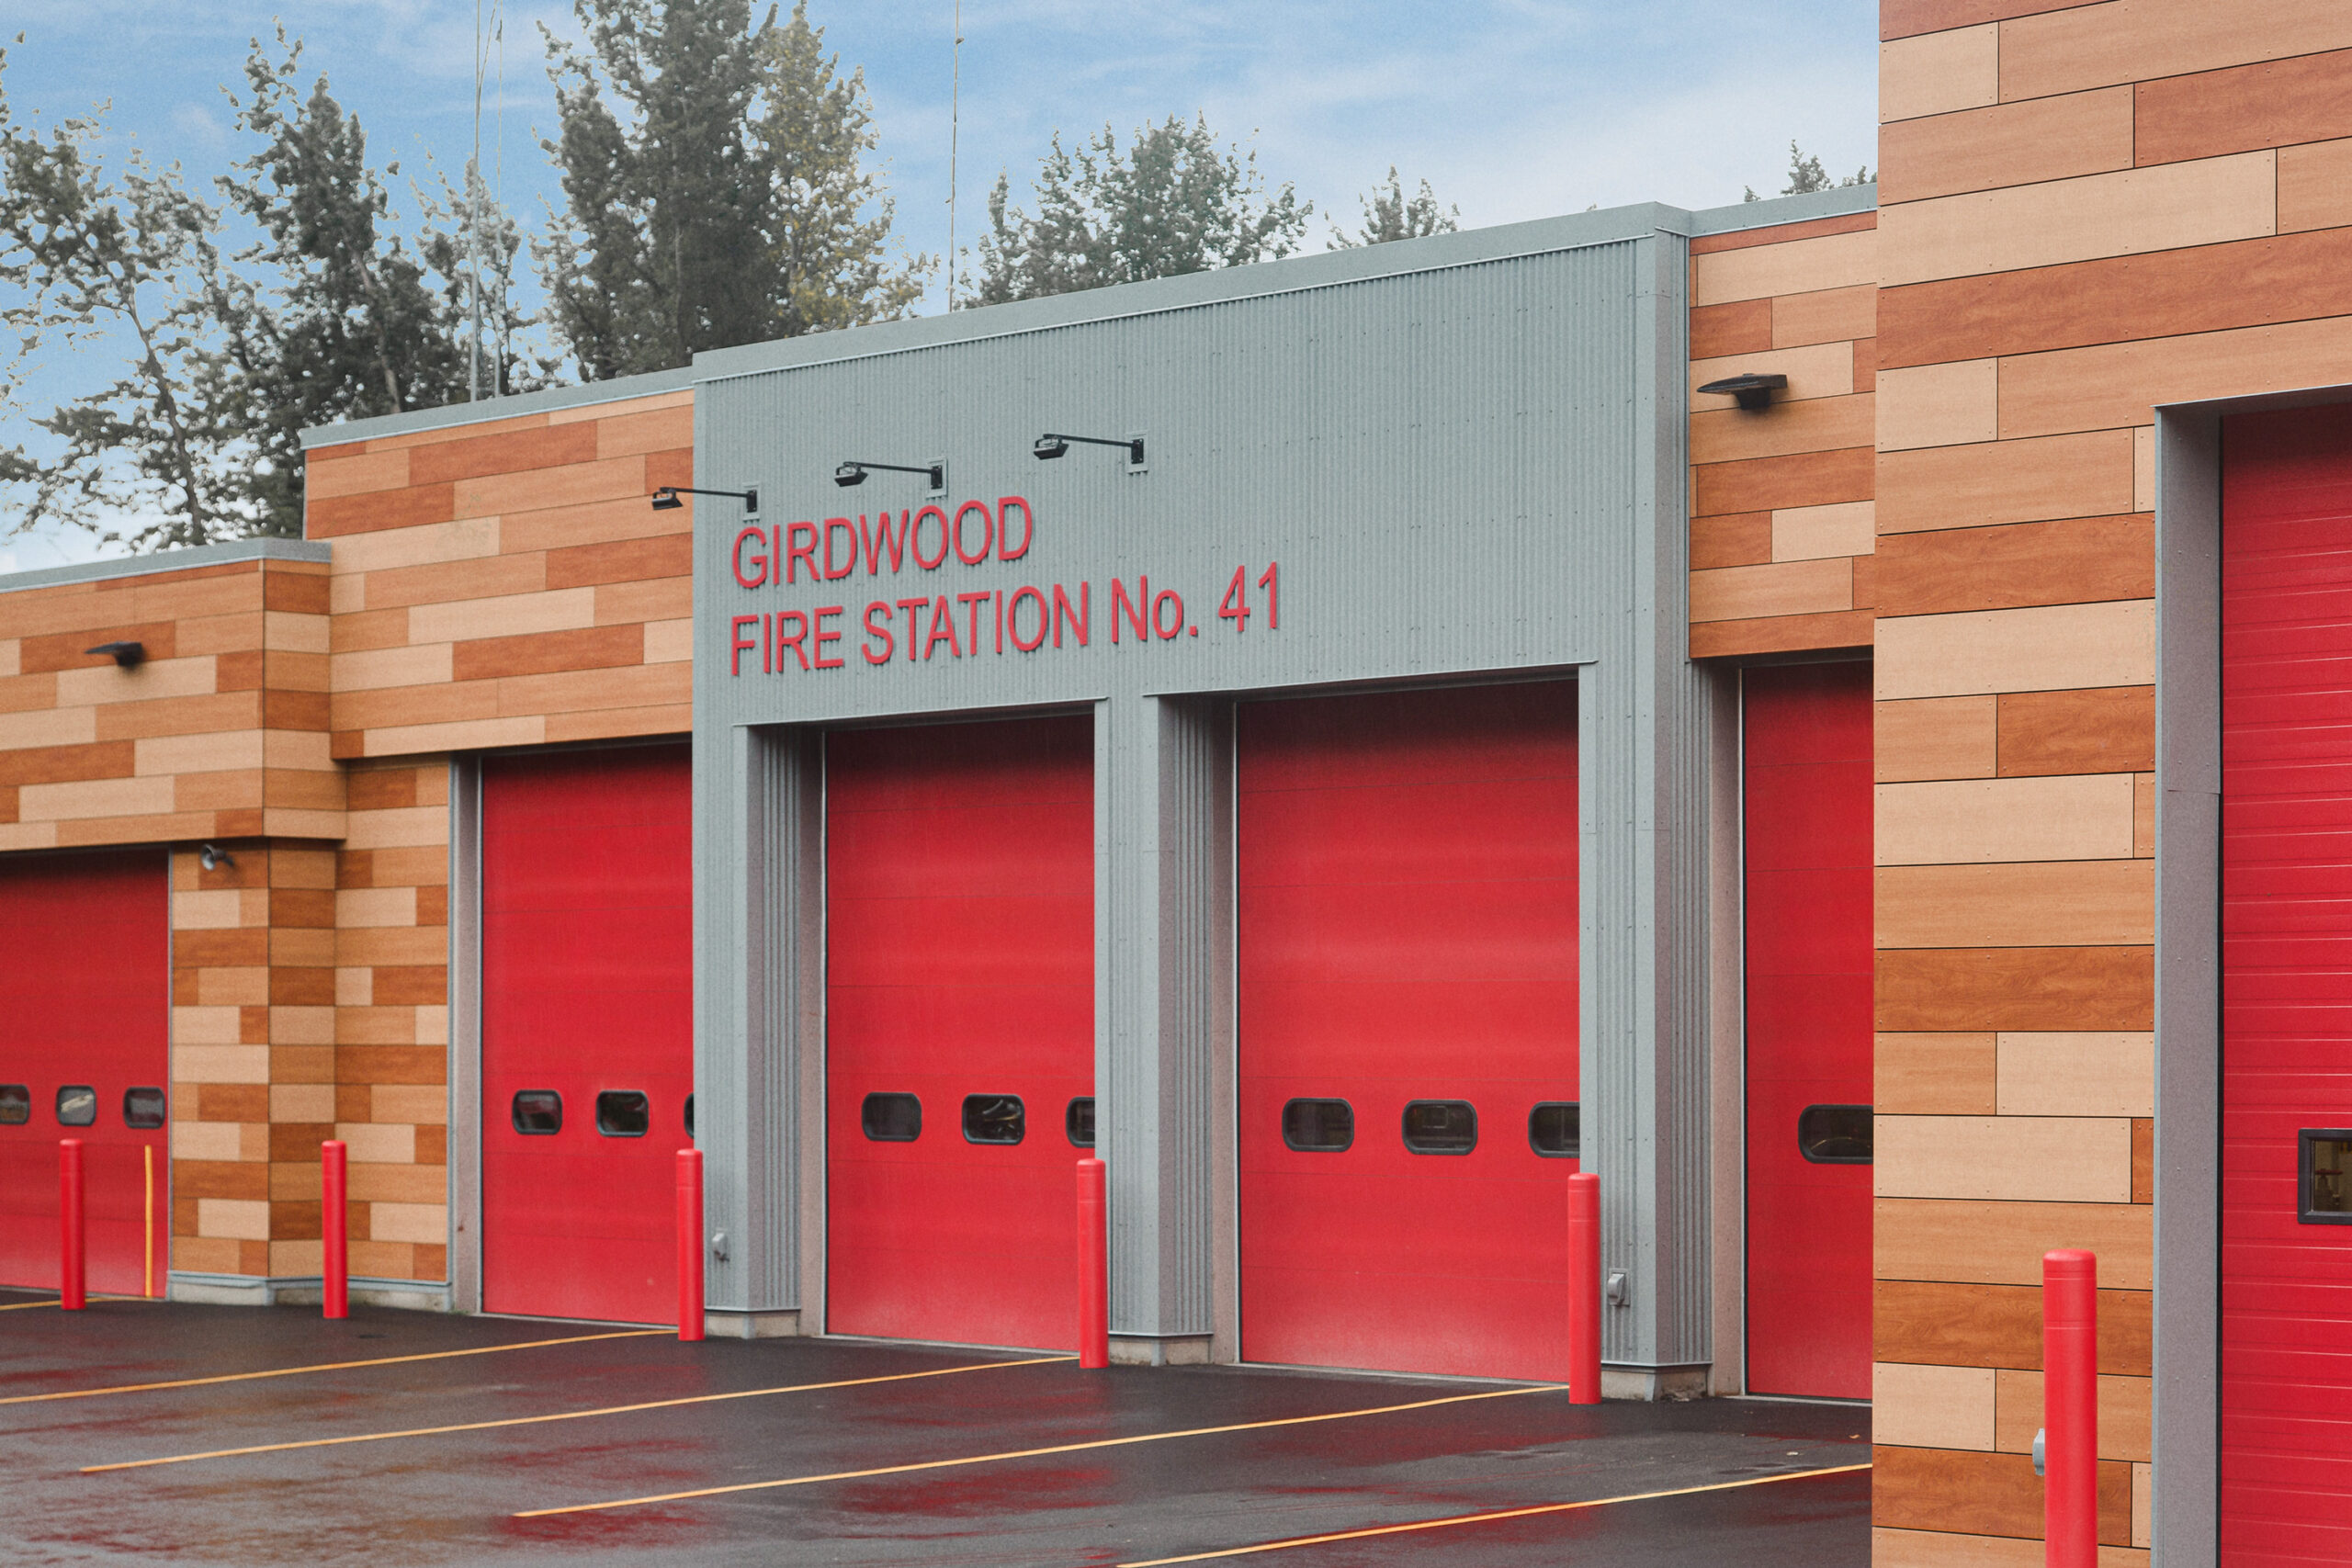 Girdwood Fire Station